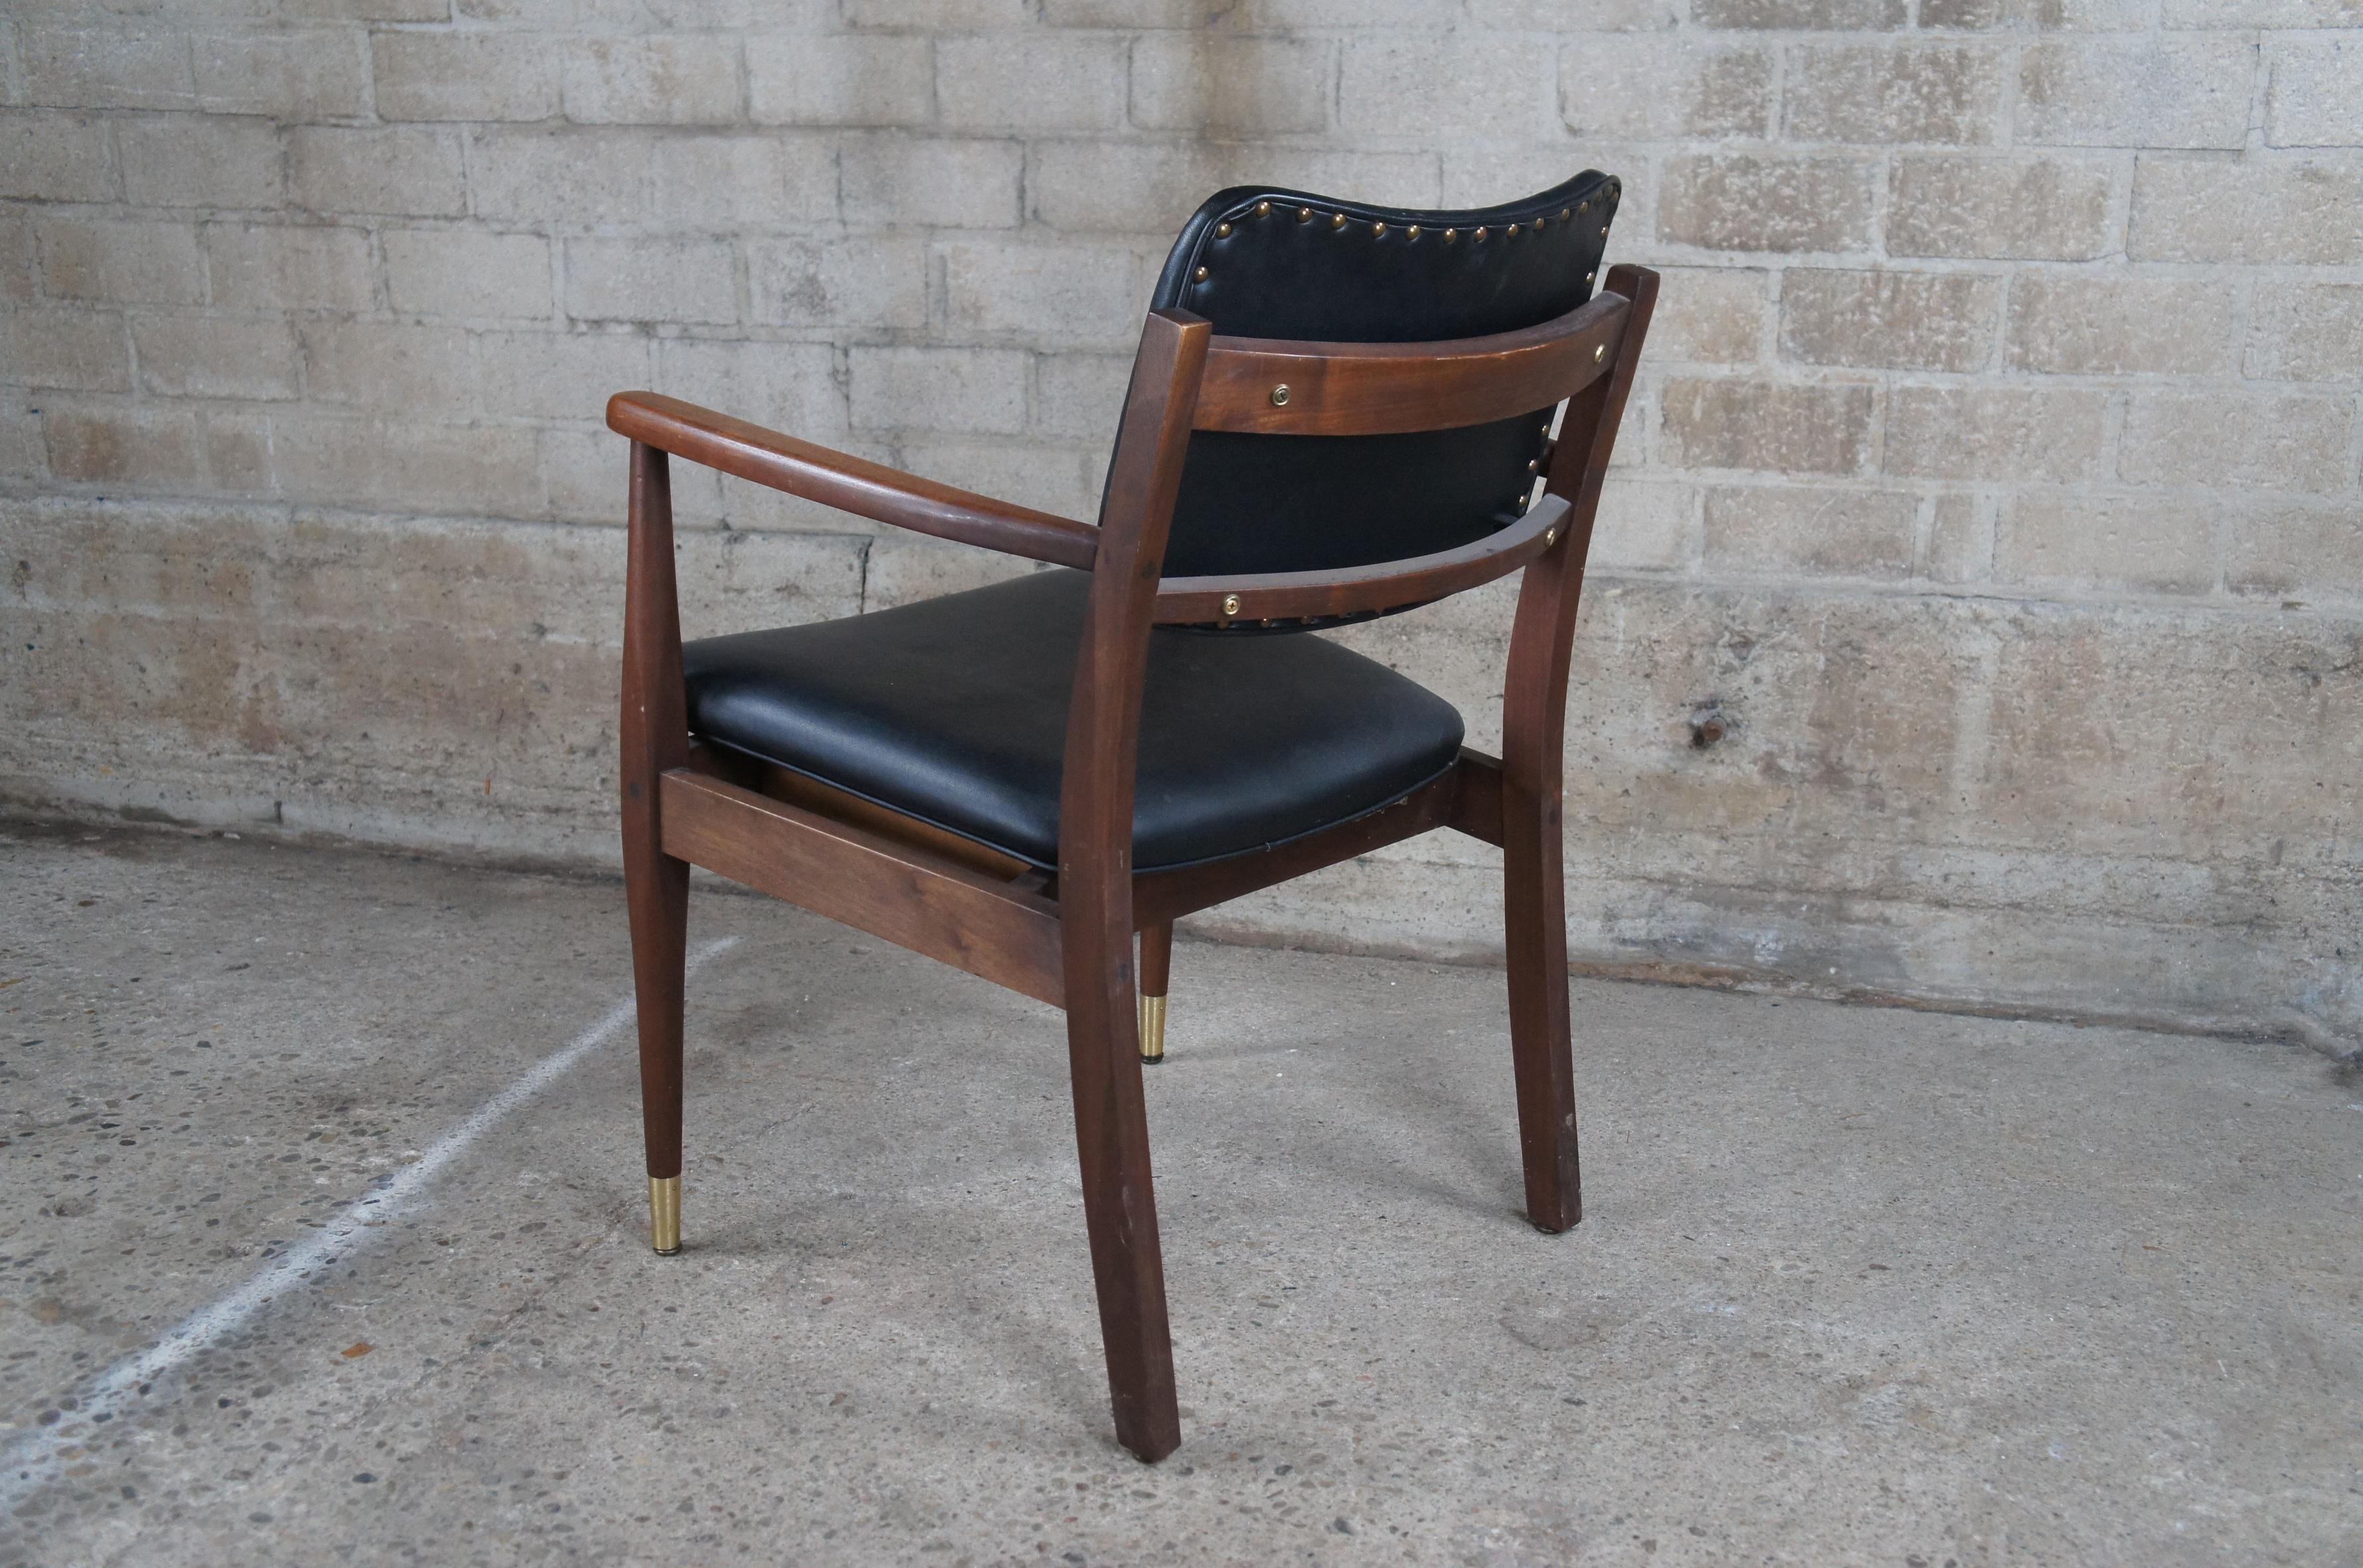 Cuir 2 fauteuils Gregson de style danois moderne du milieu du siècle dernier, en noyer et cuir en vente